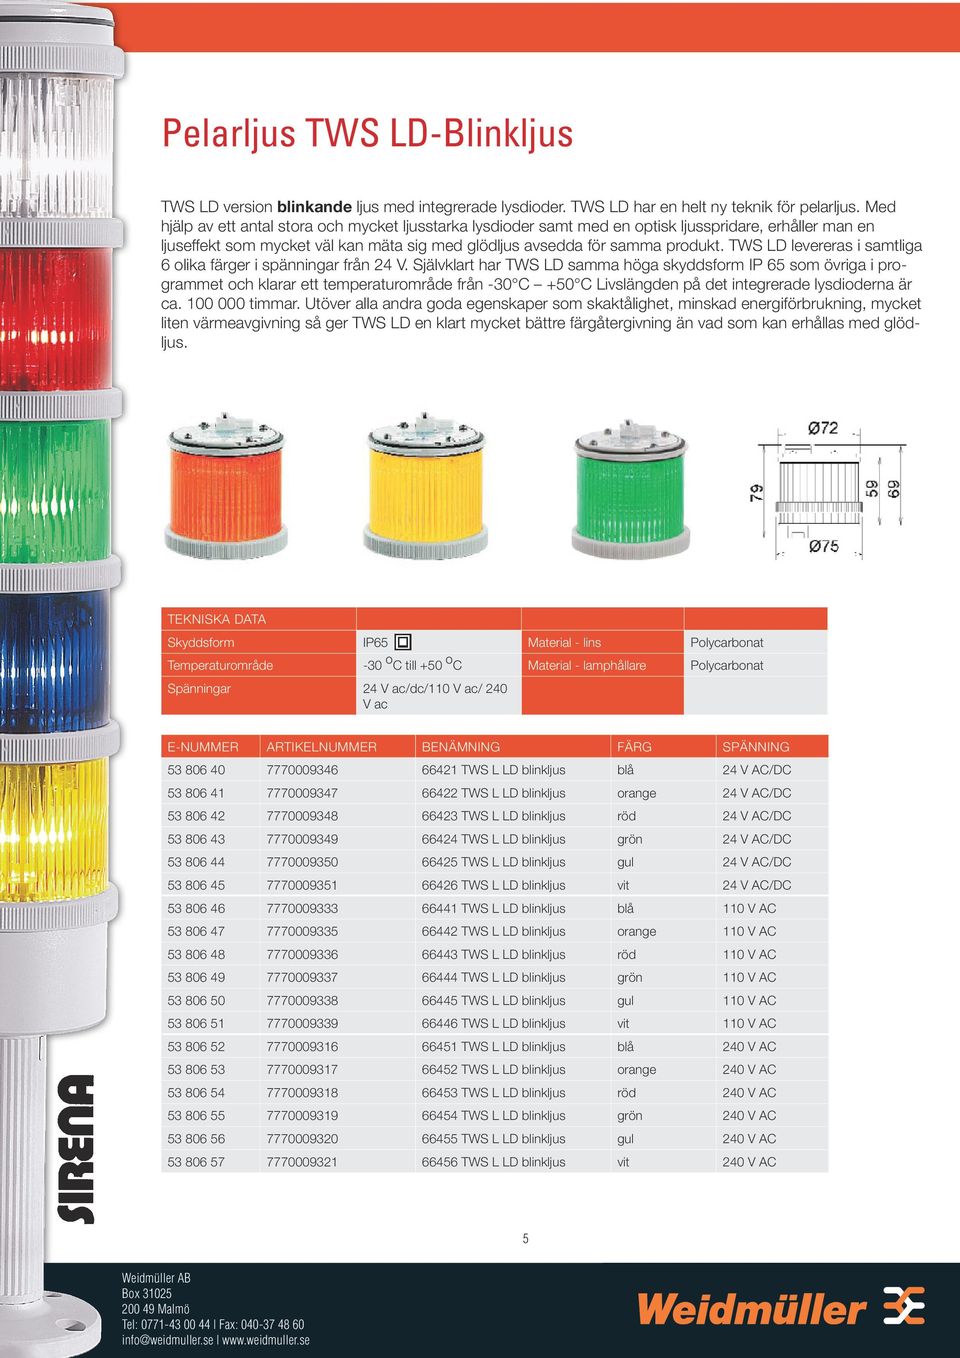 TWS LD levereras i samtliga 6 olika färger i spänningar från 24 V.